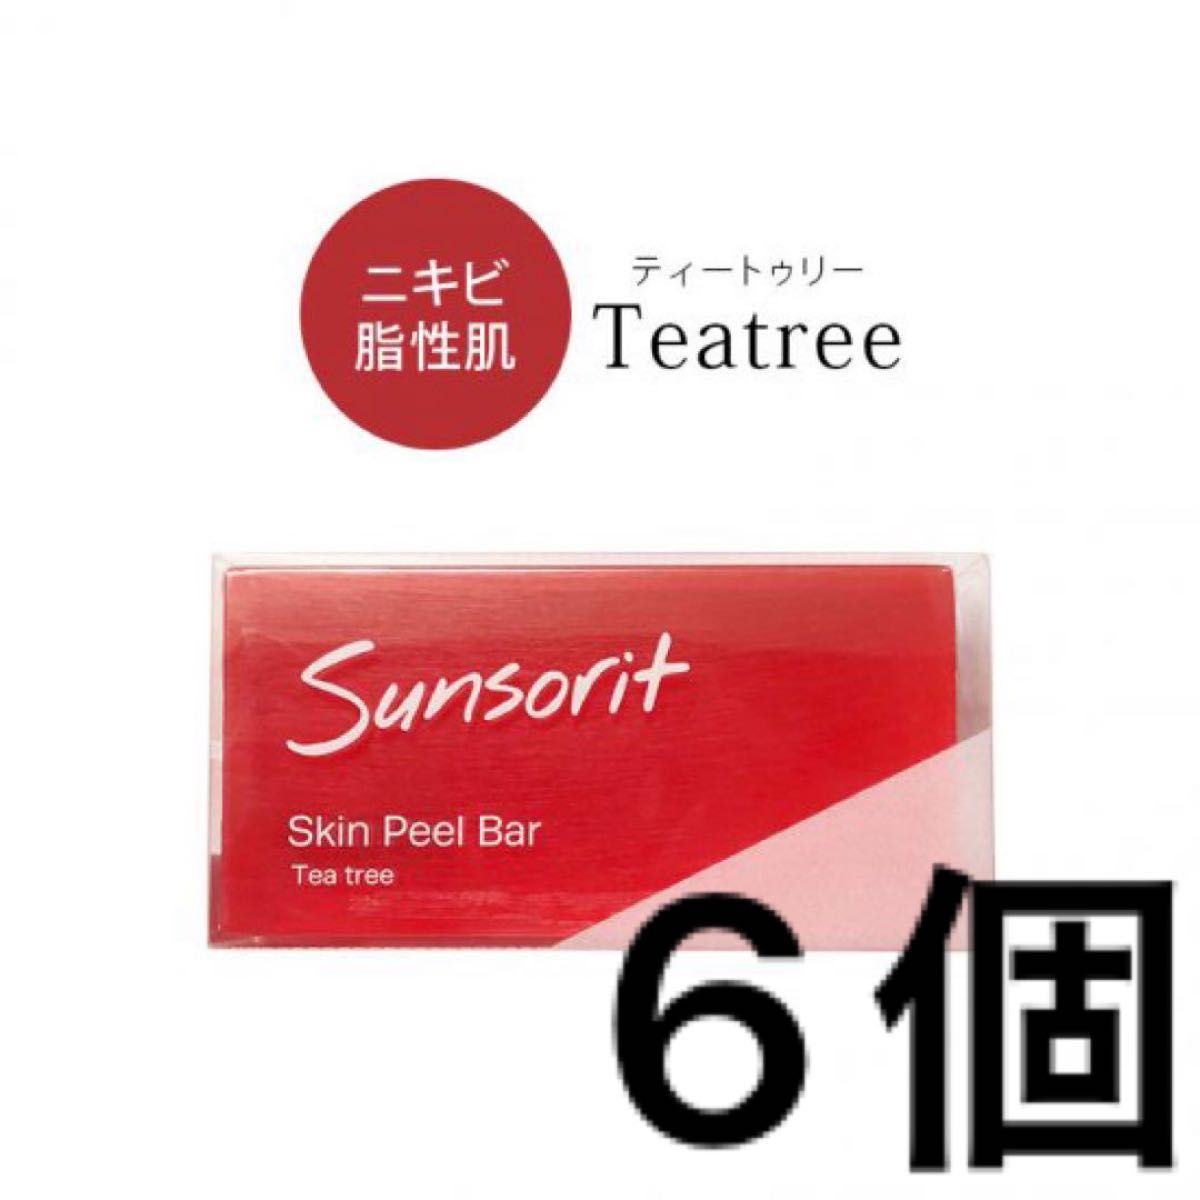 サンソリット スキンピールバー ティートゥリー 赤 1個 - 基礎化粧品